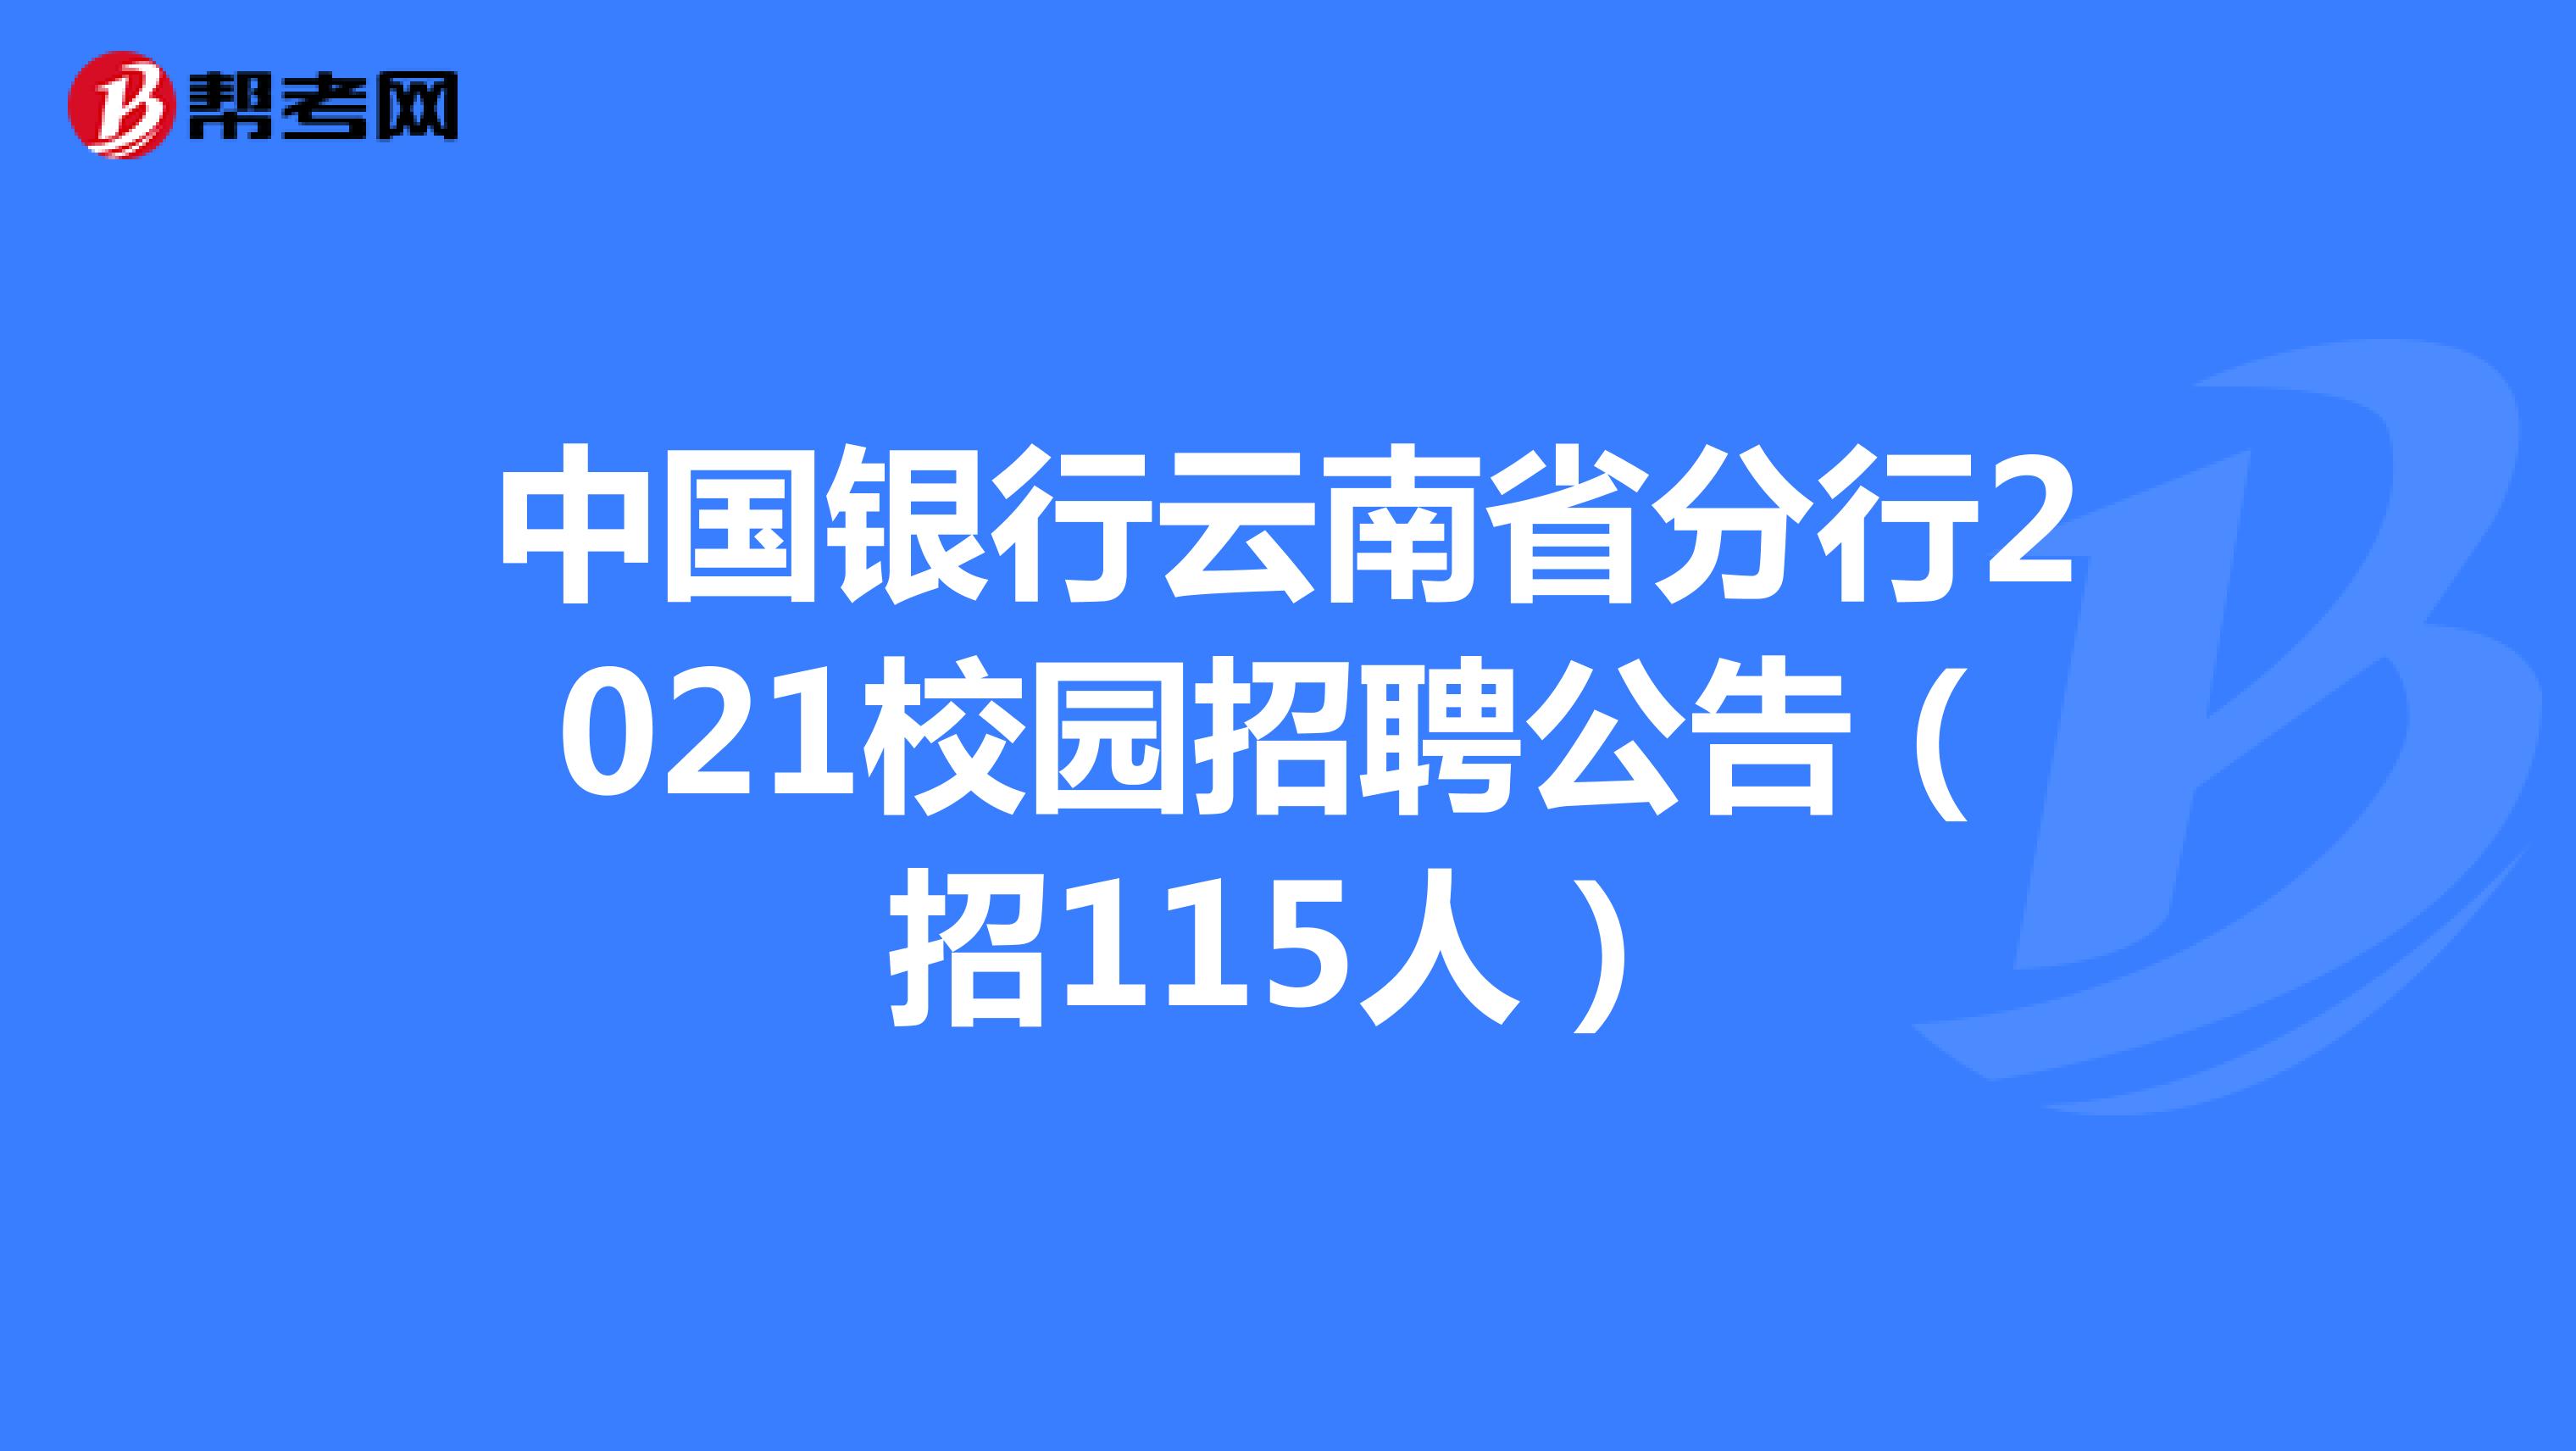 中国银行云南省分行2021校园招聘公告（招115人）